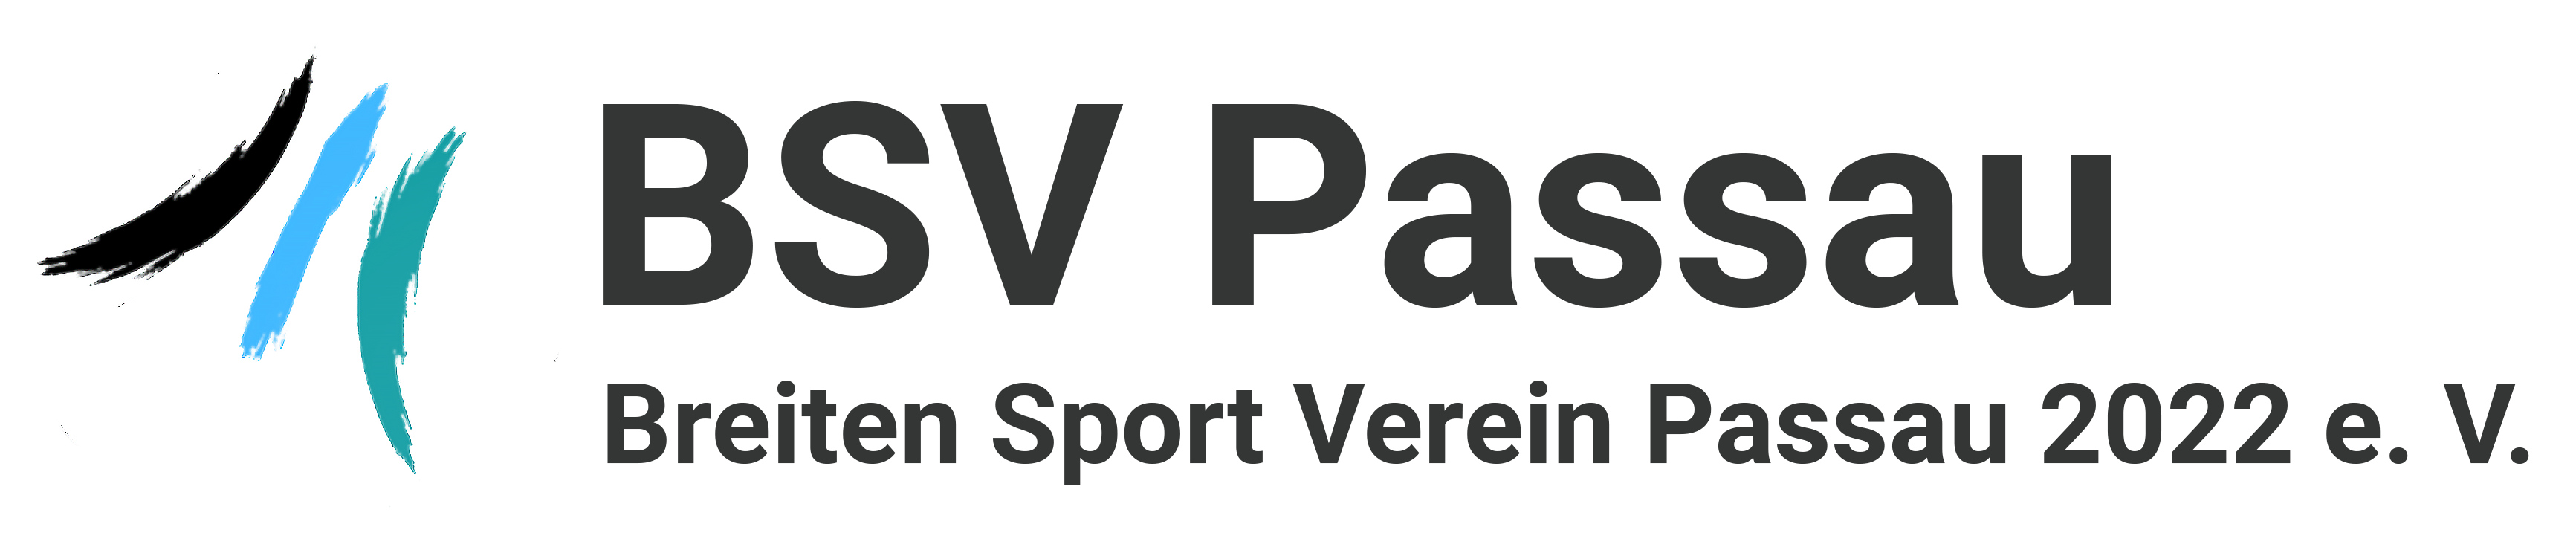 BSV Passau 2022 e. V.